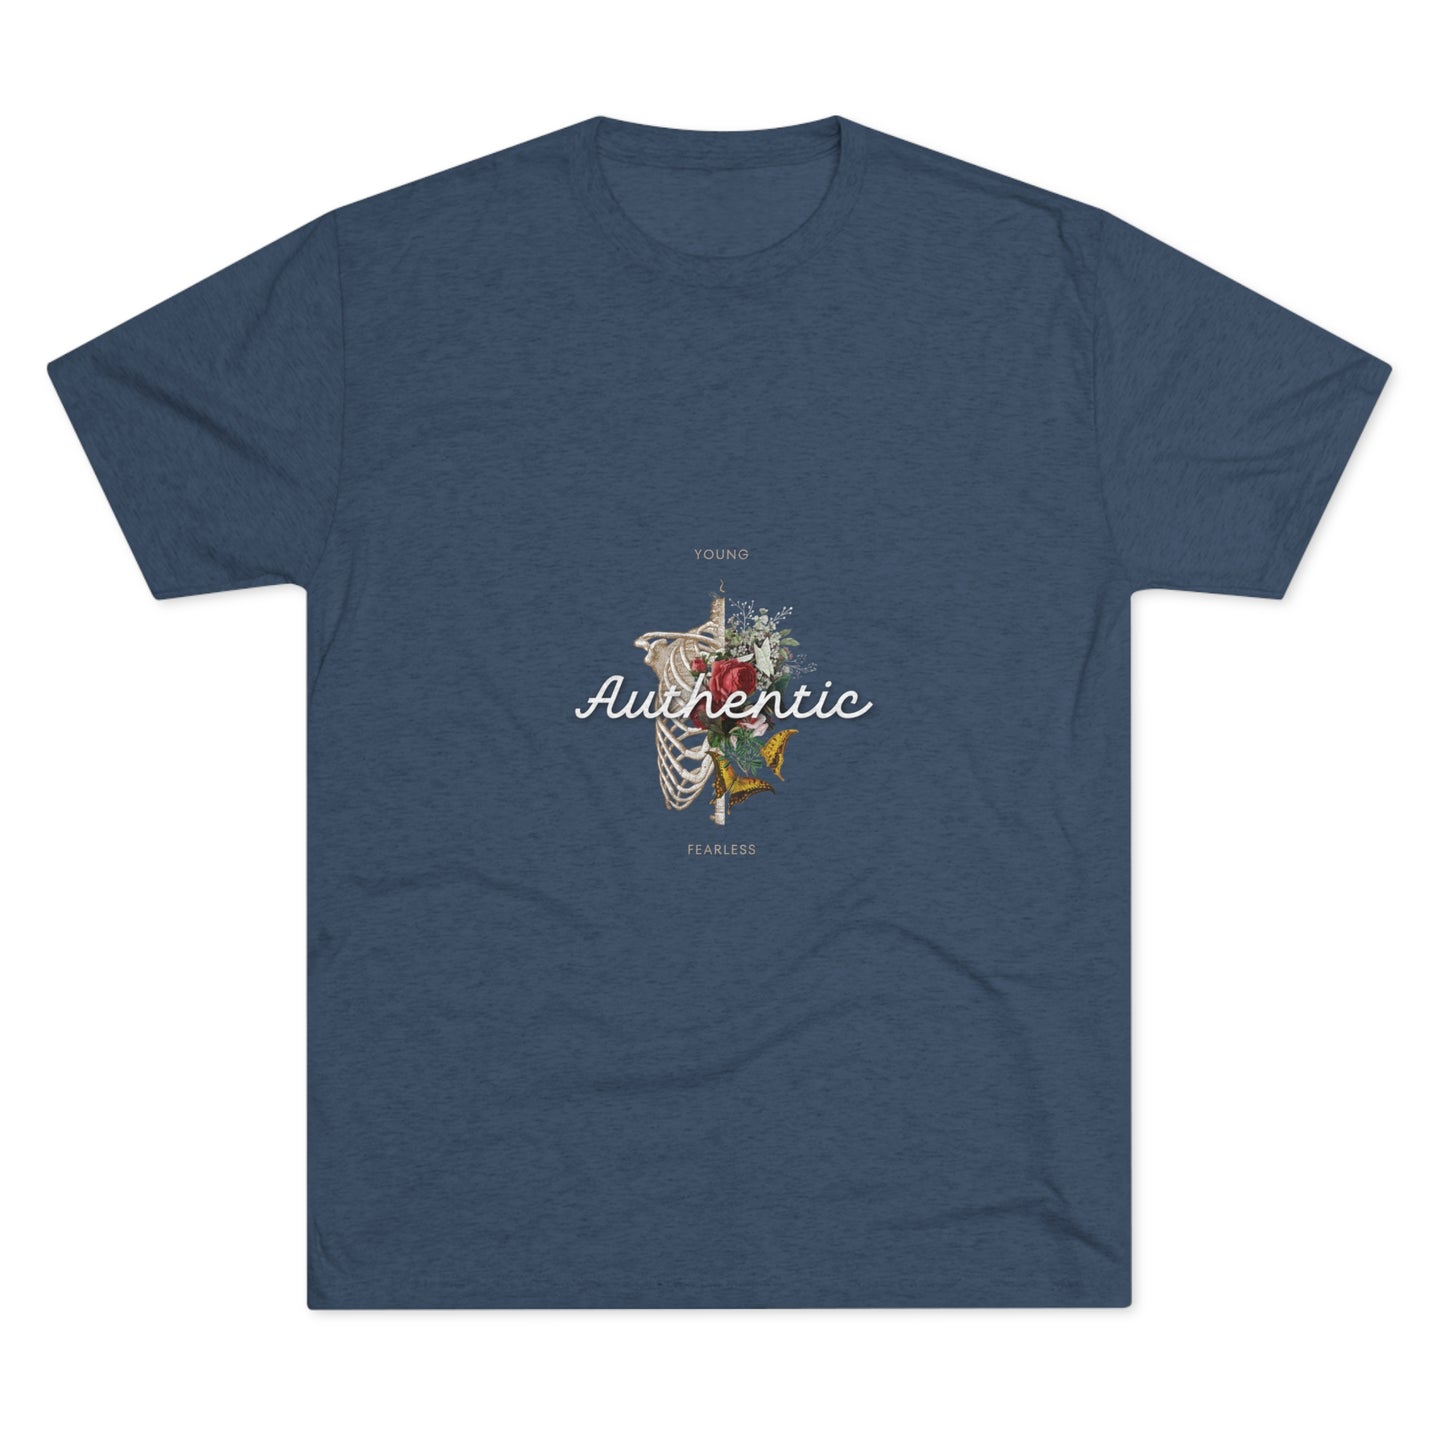 "Authentic" tri Blend T-shirt